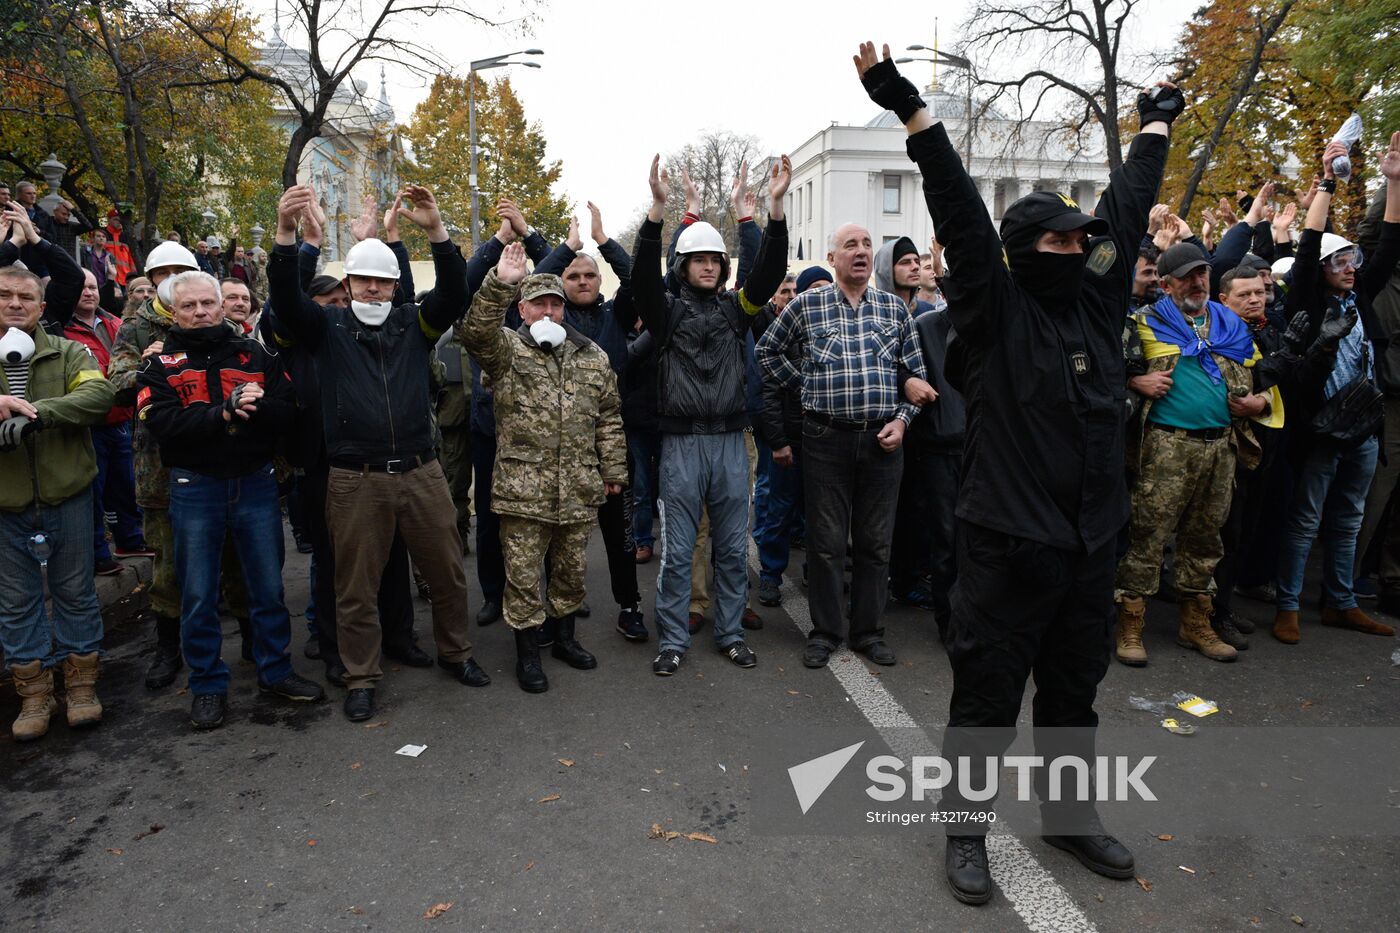 Protest outside Verkhovna Rada in Kiev